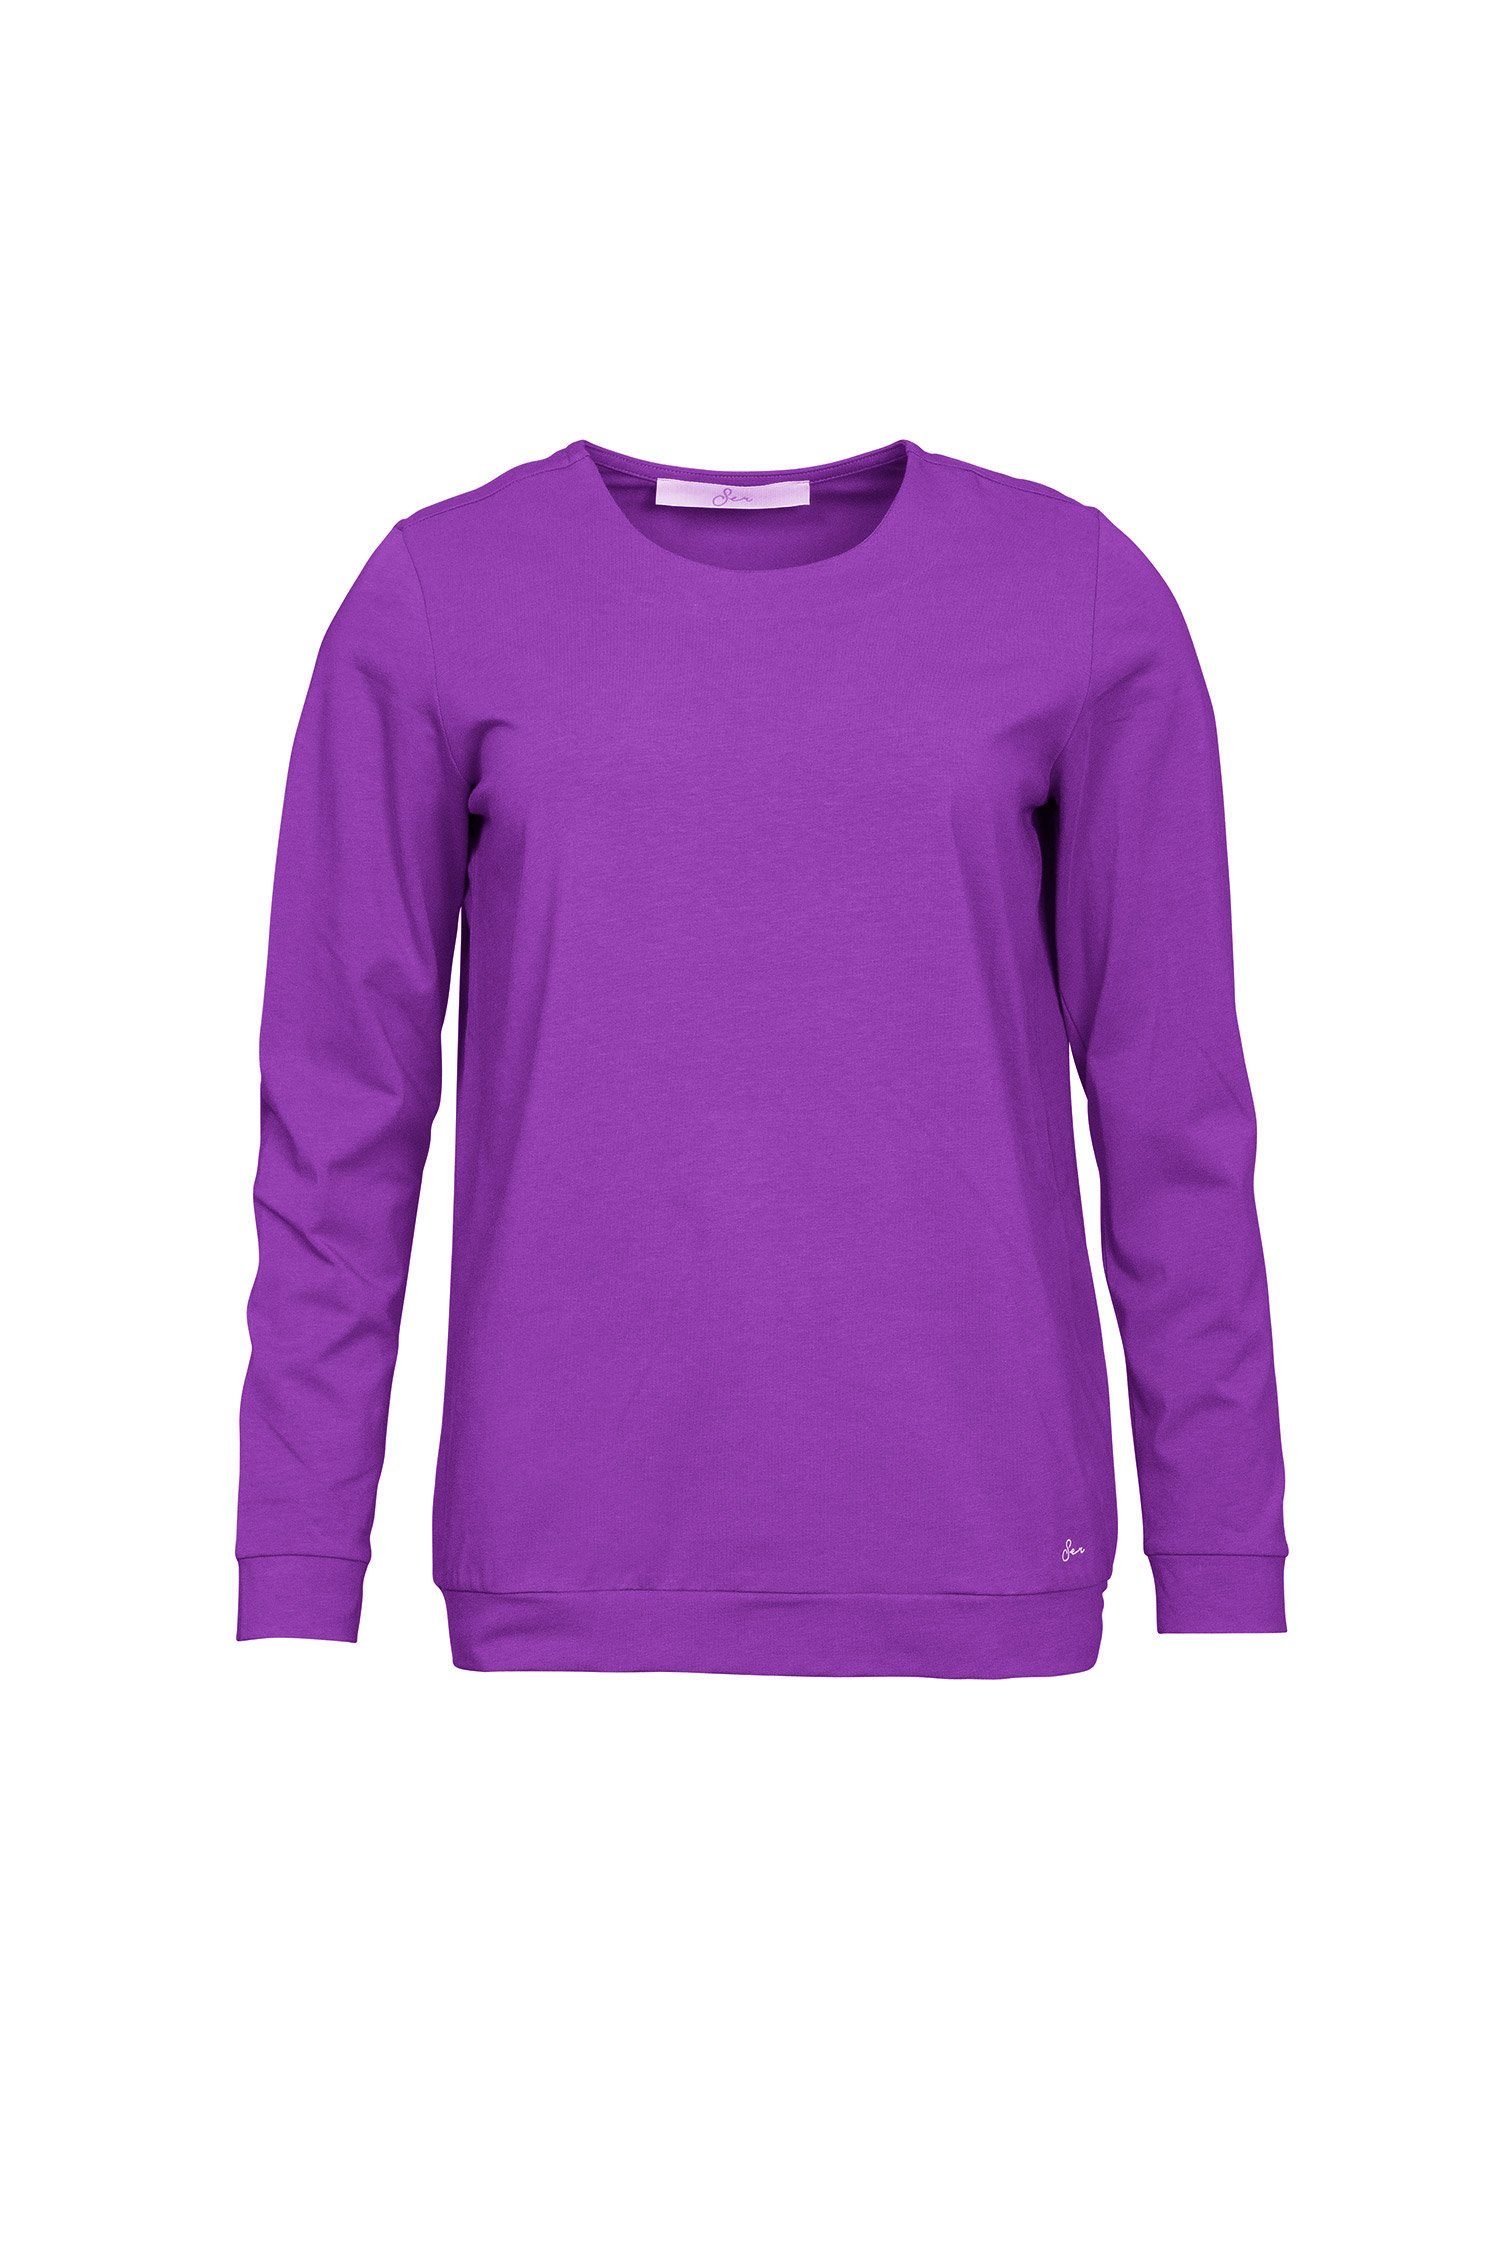 SER in einfarbig 828 auch großen Größen Rundhals Langarmshirt W9923101W melange purple Shirt